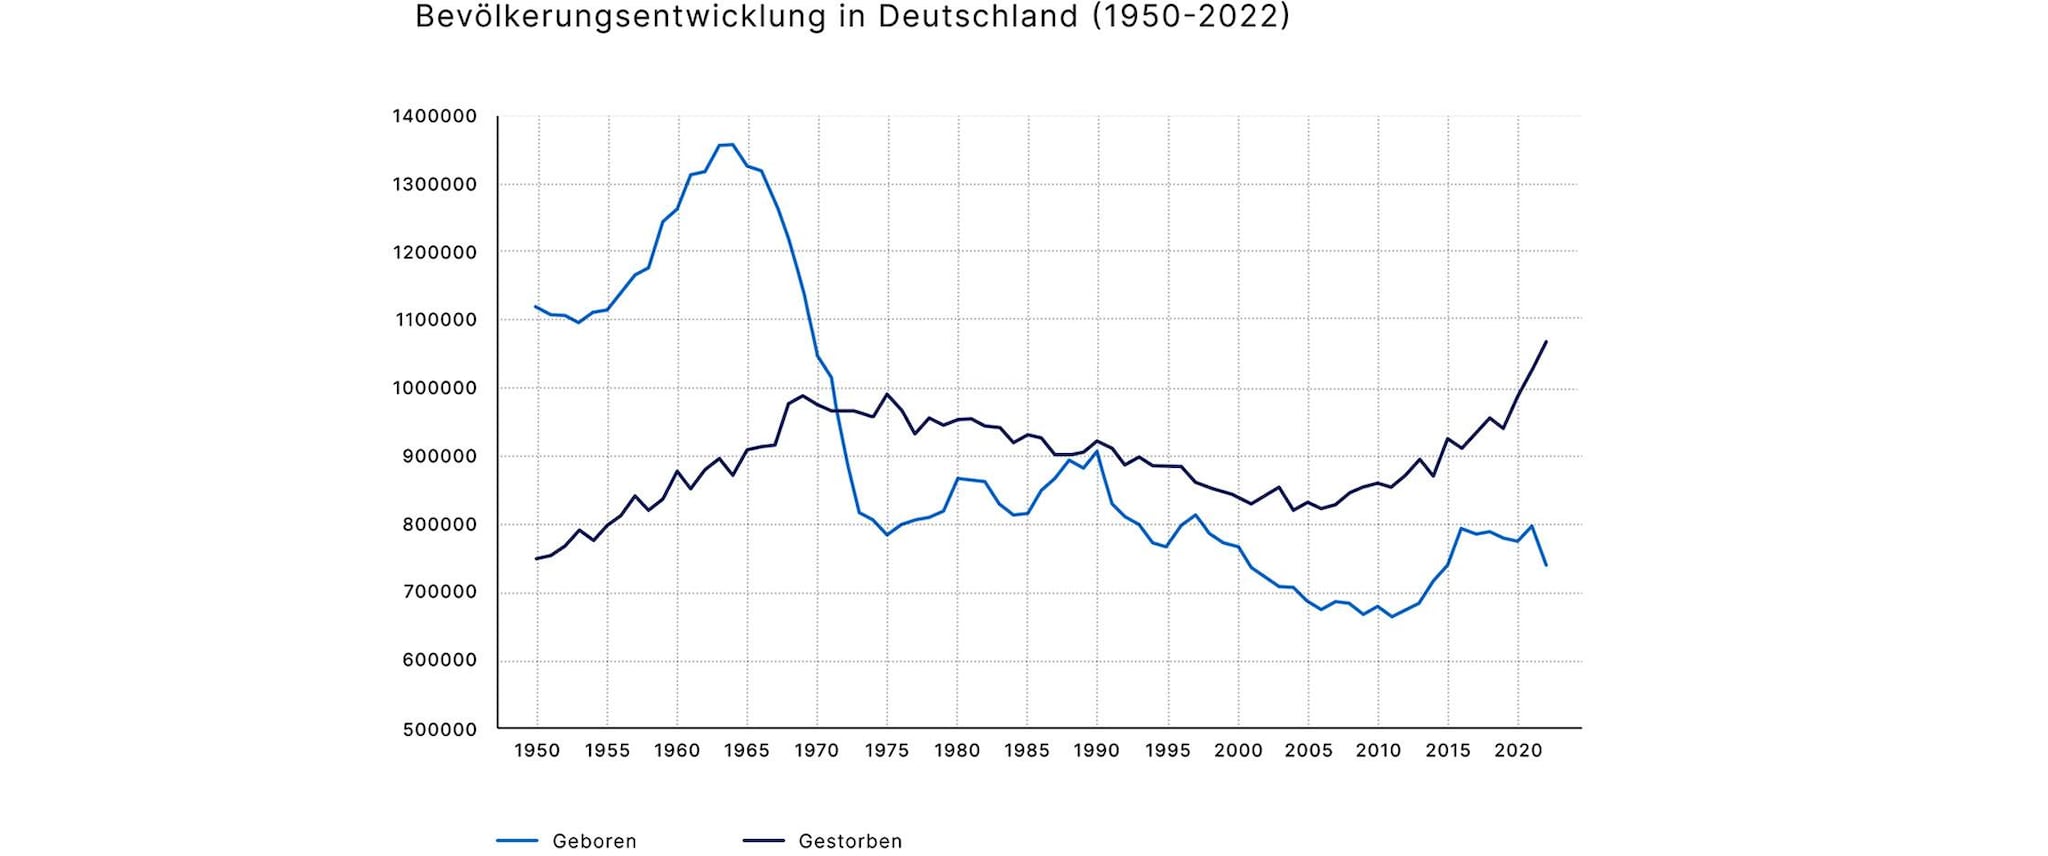 Bevölkerungsentwicklung in Deutschland (1950-2022)